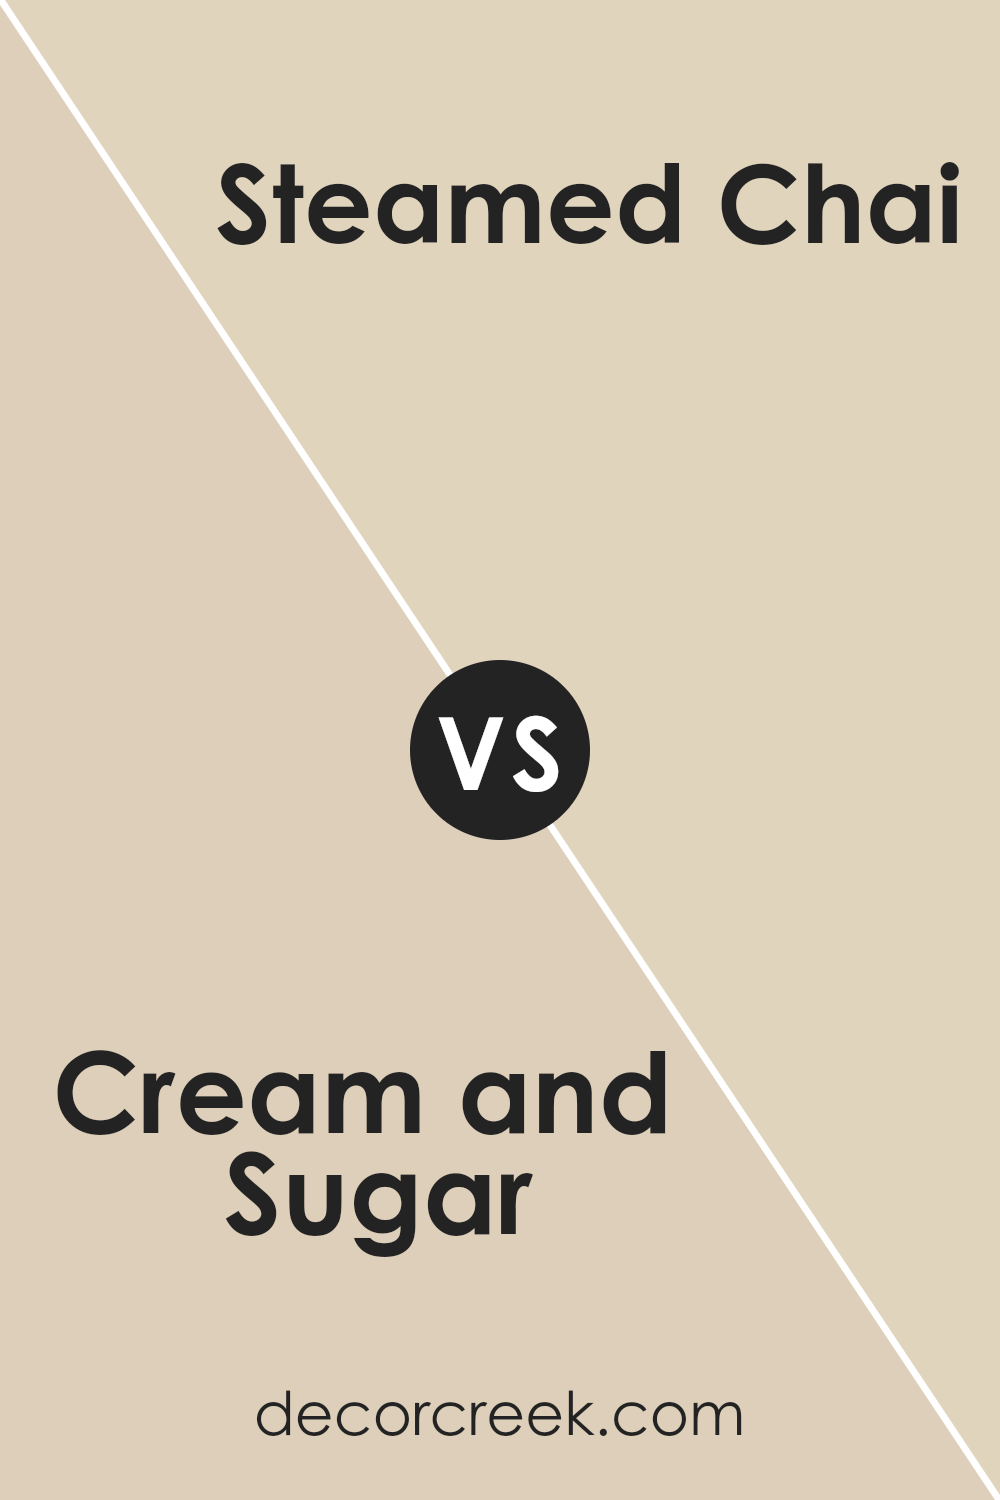 cream_and_sugar_sw_9507_vs_steamed_chai_sw_9509